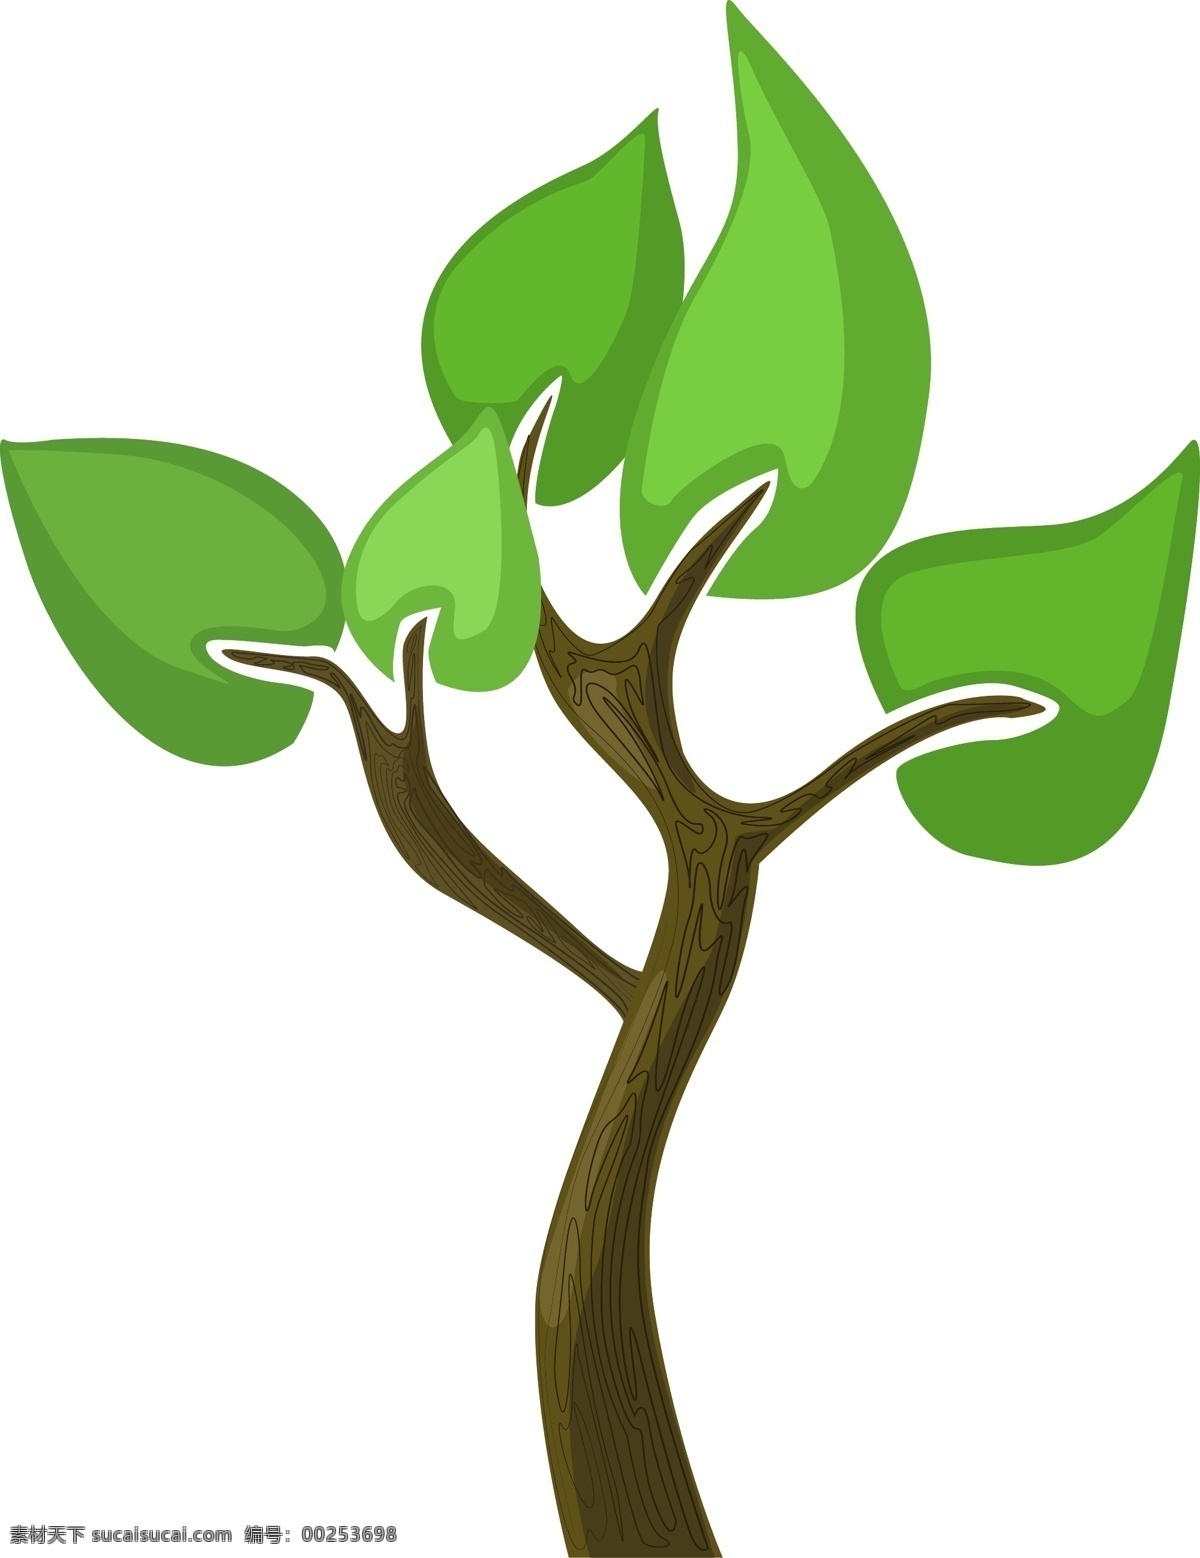 唯美 绿色 创意 树 绿色的枝叶 创意树 卡通植物插画 大树 植物插画 创意植物插画 植物 插画